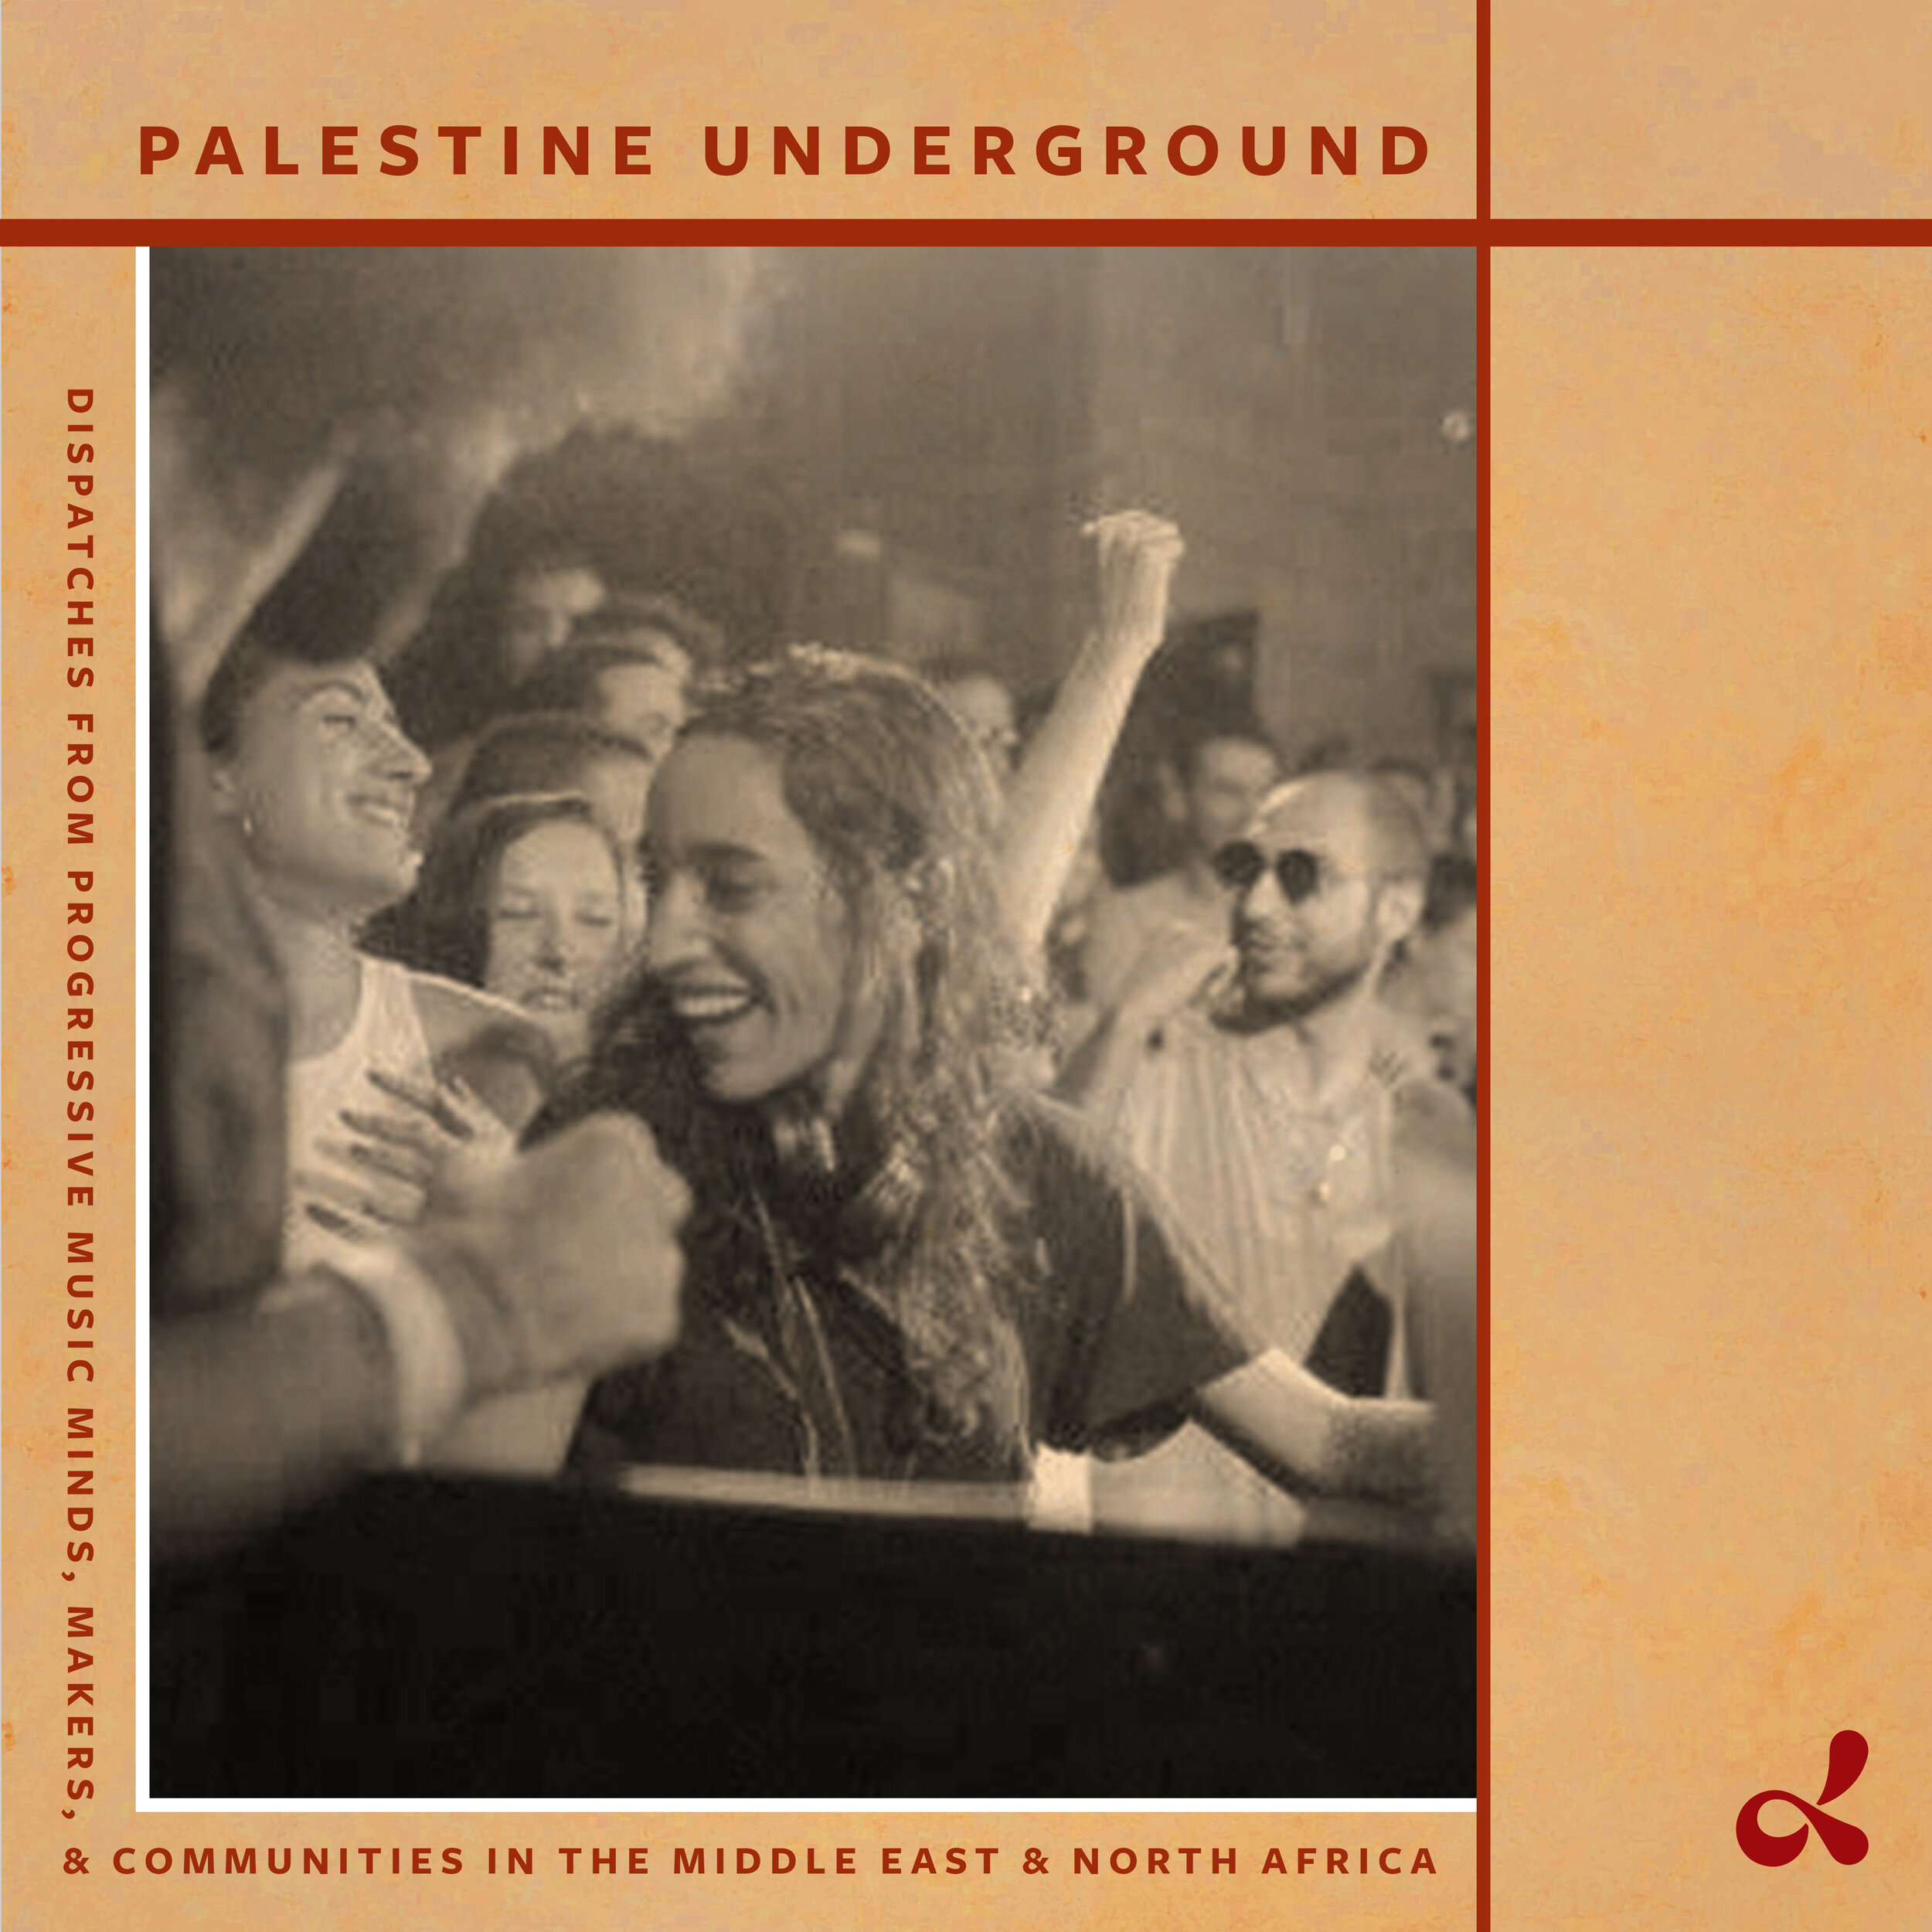 Palestine_Underground_COVER.jpg